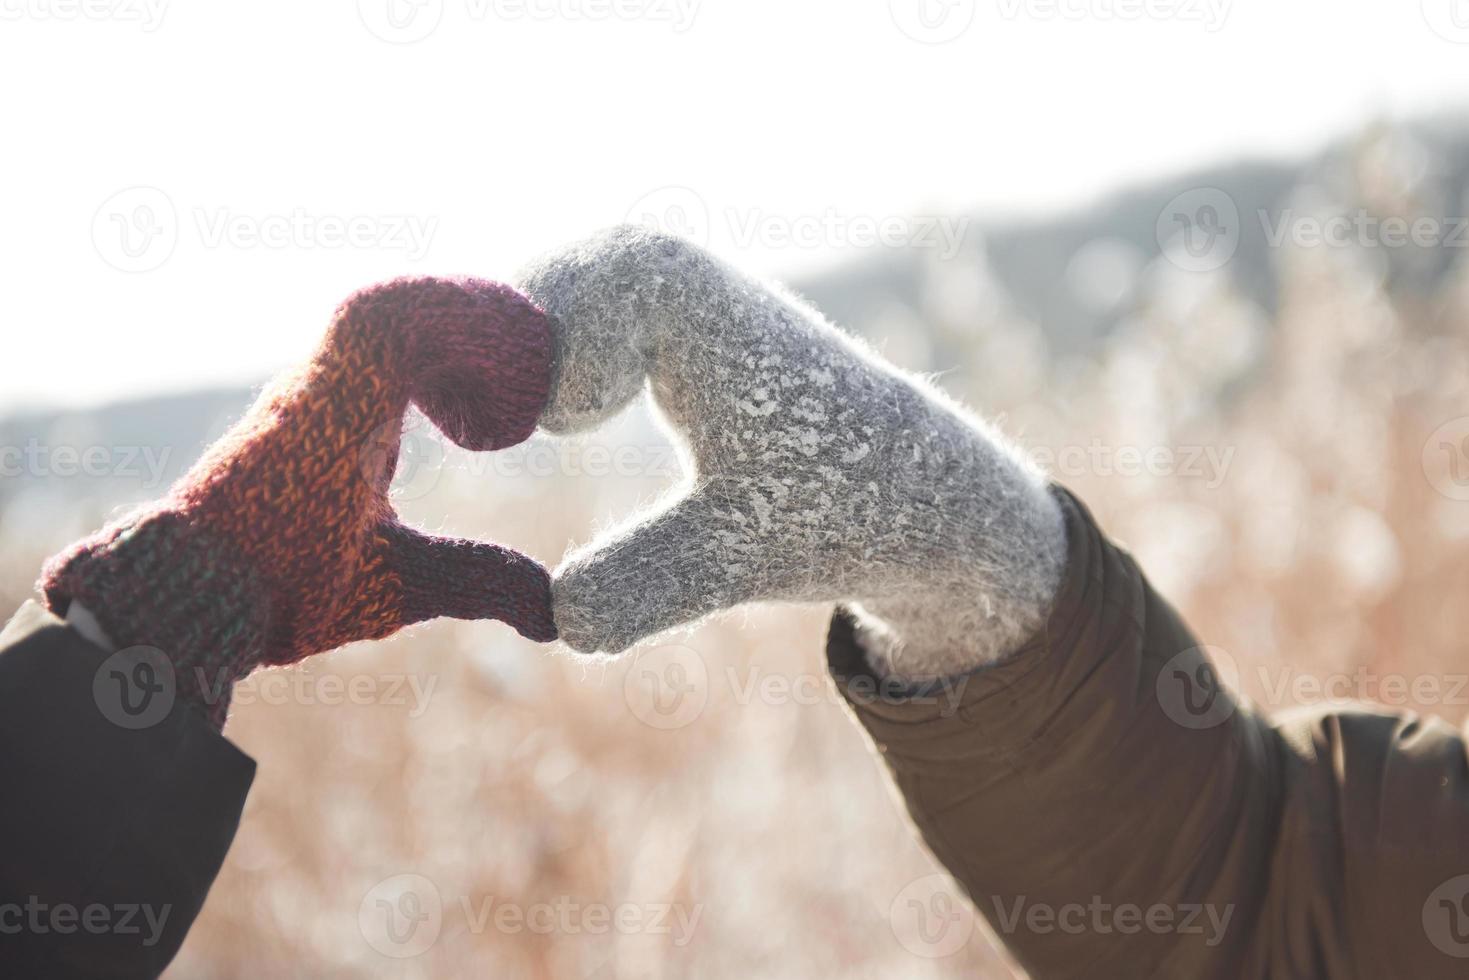 le mani delle donne e dell'uomo in guanti piegate a forma di cuore. concetto di inverno. nevicata. foto